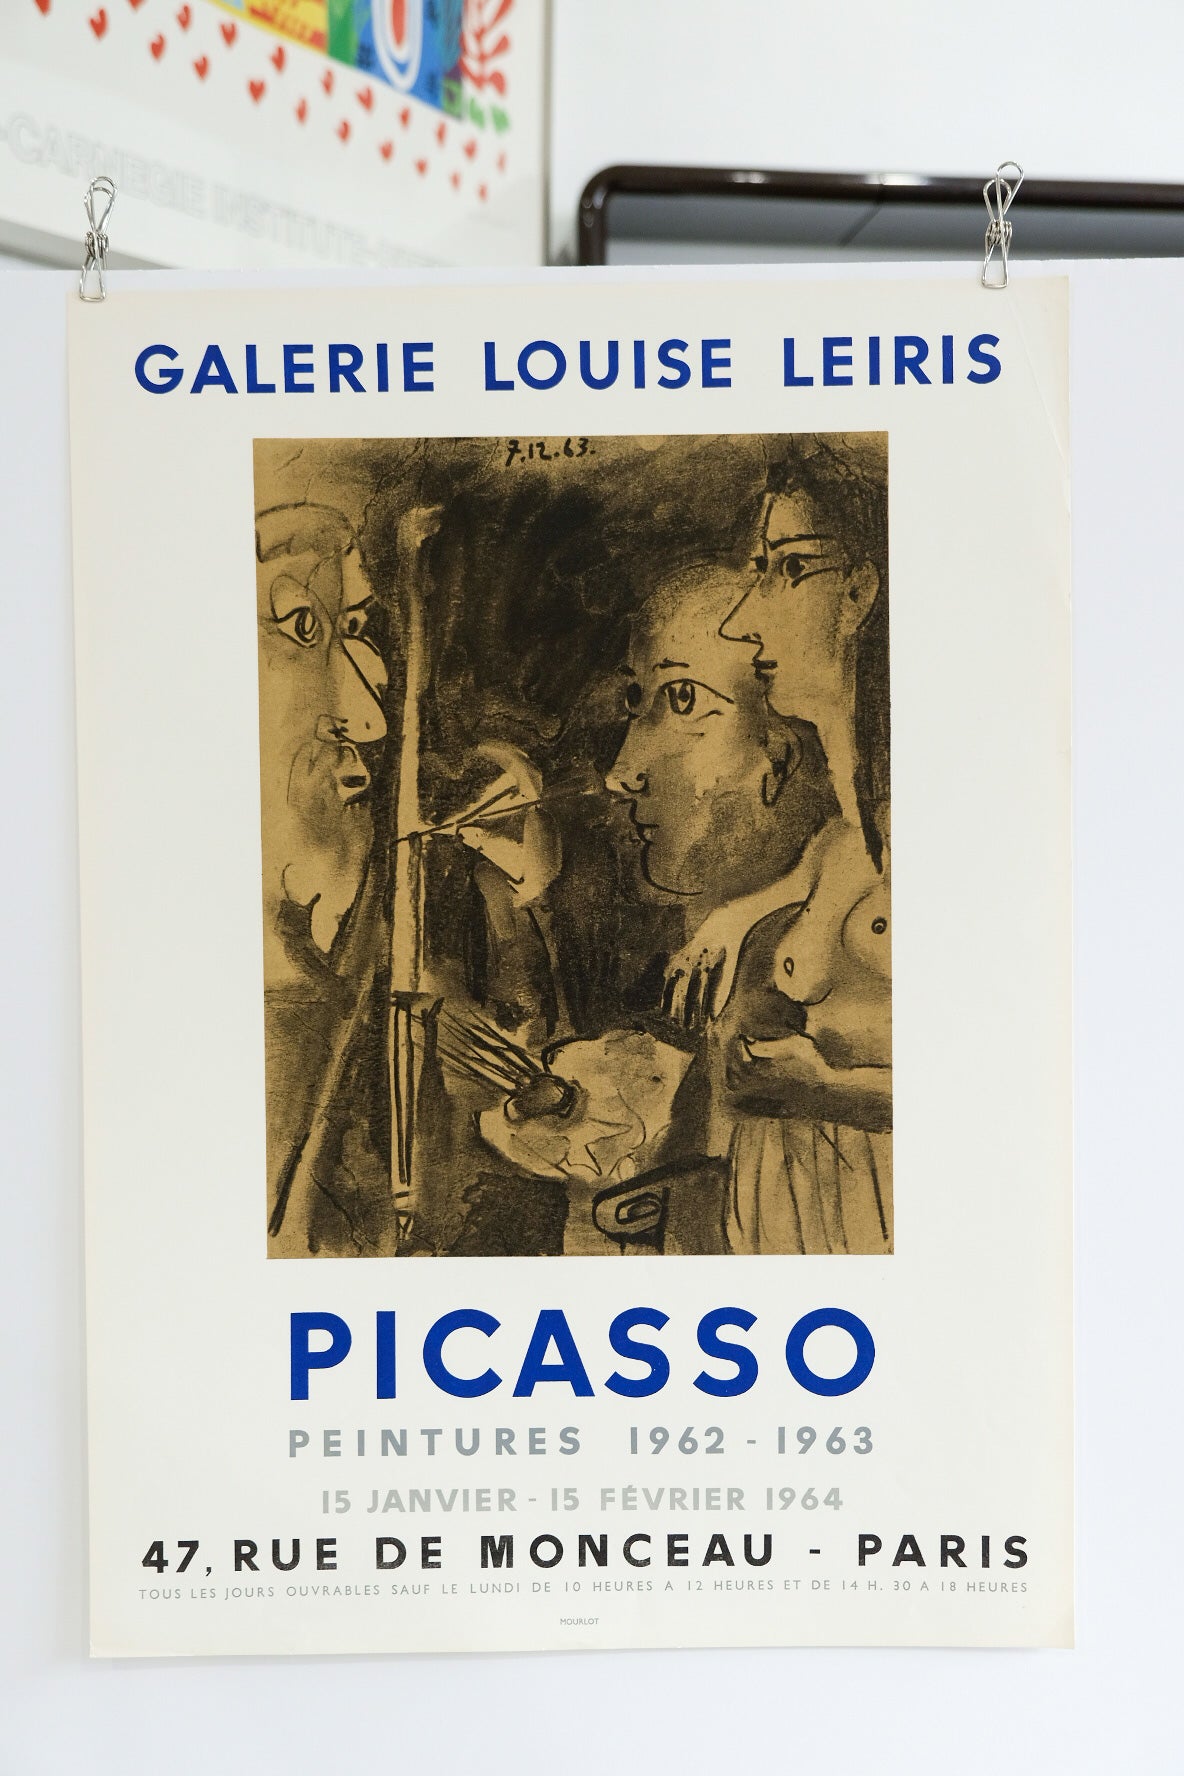 Pablo Picasso Galerie Louise Leiris Peintures 1962 - 1963